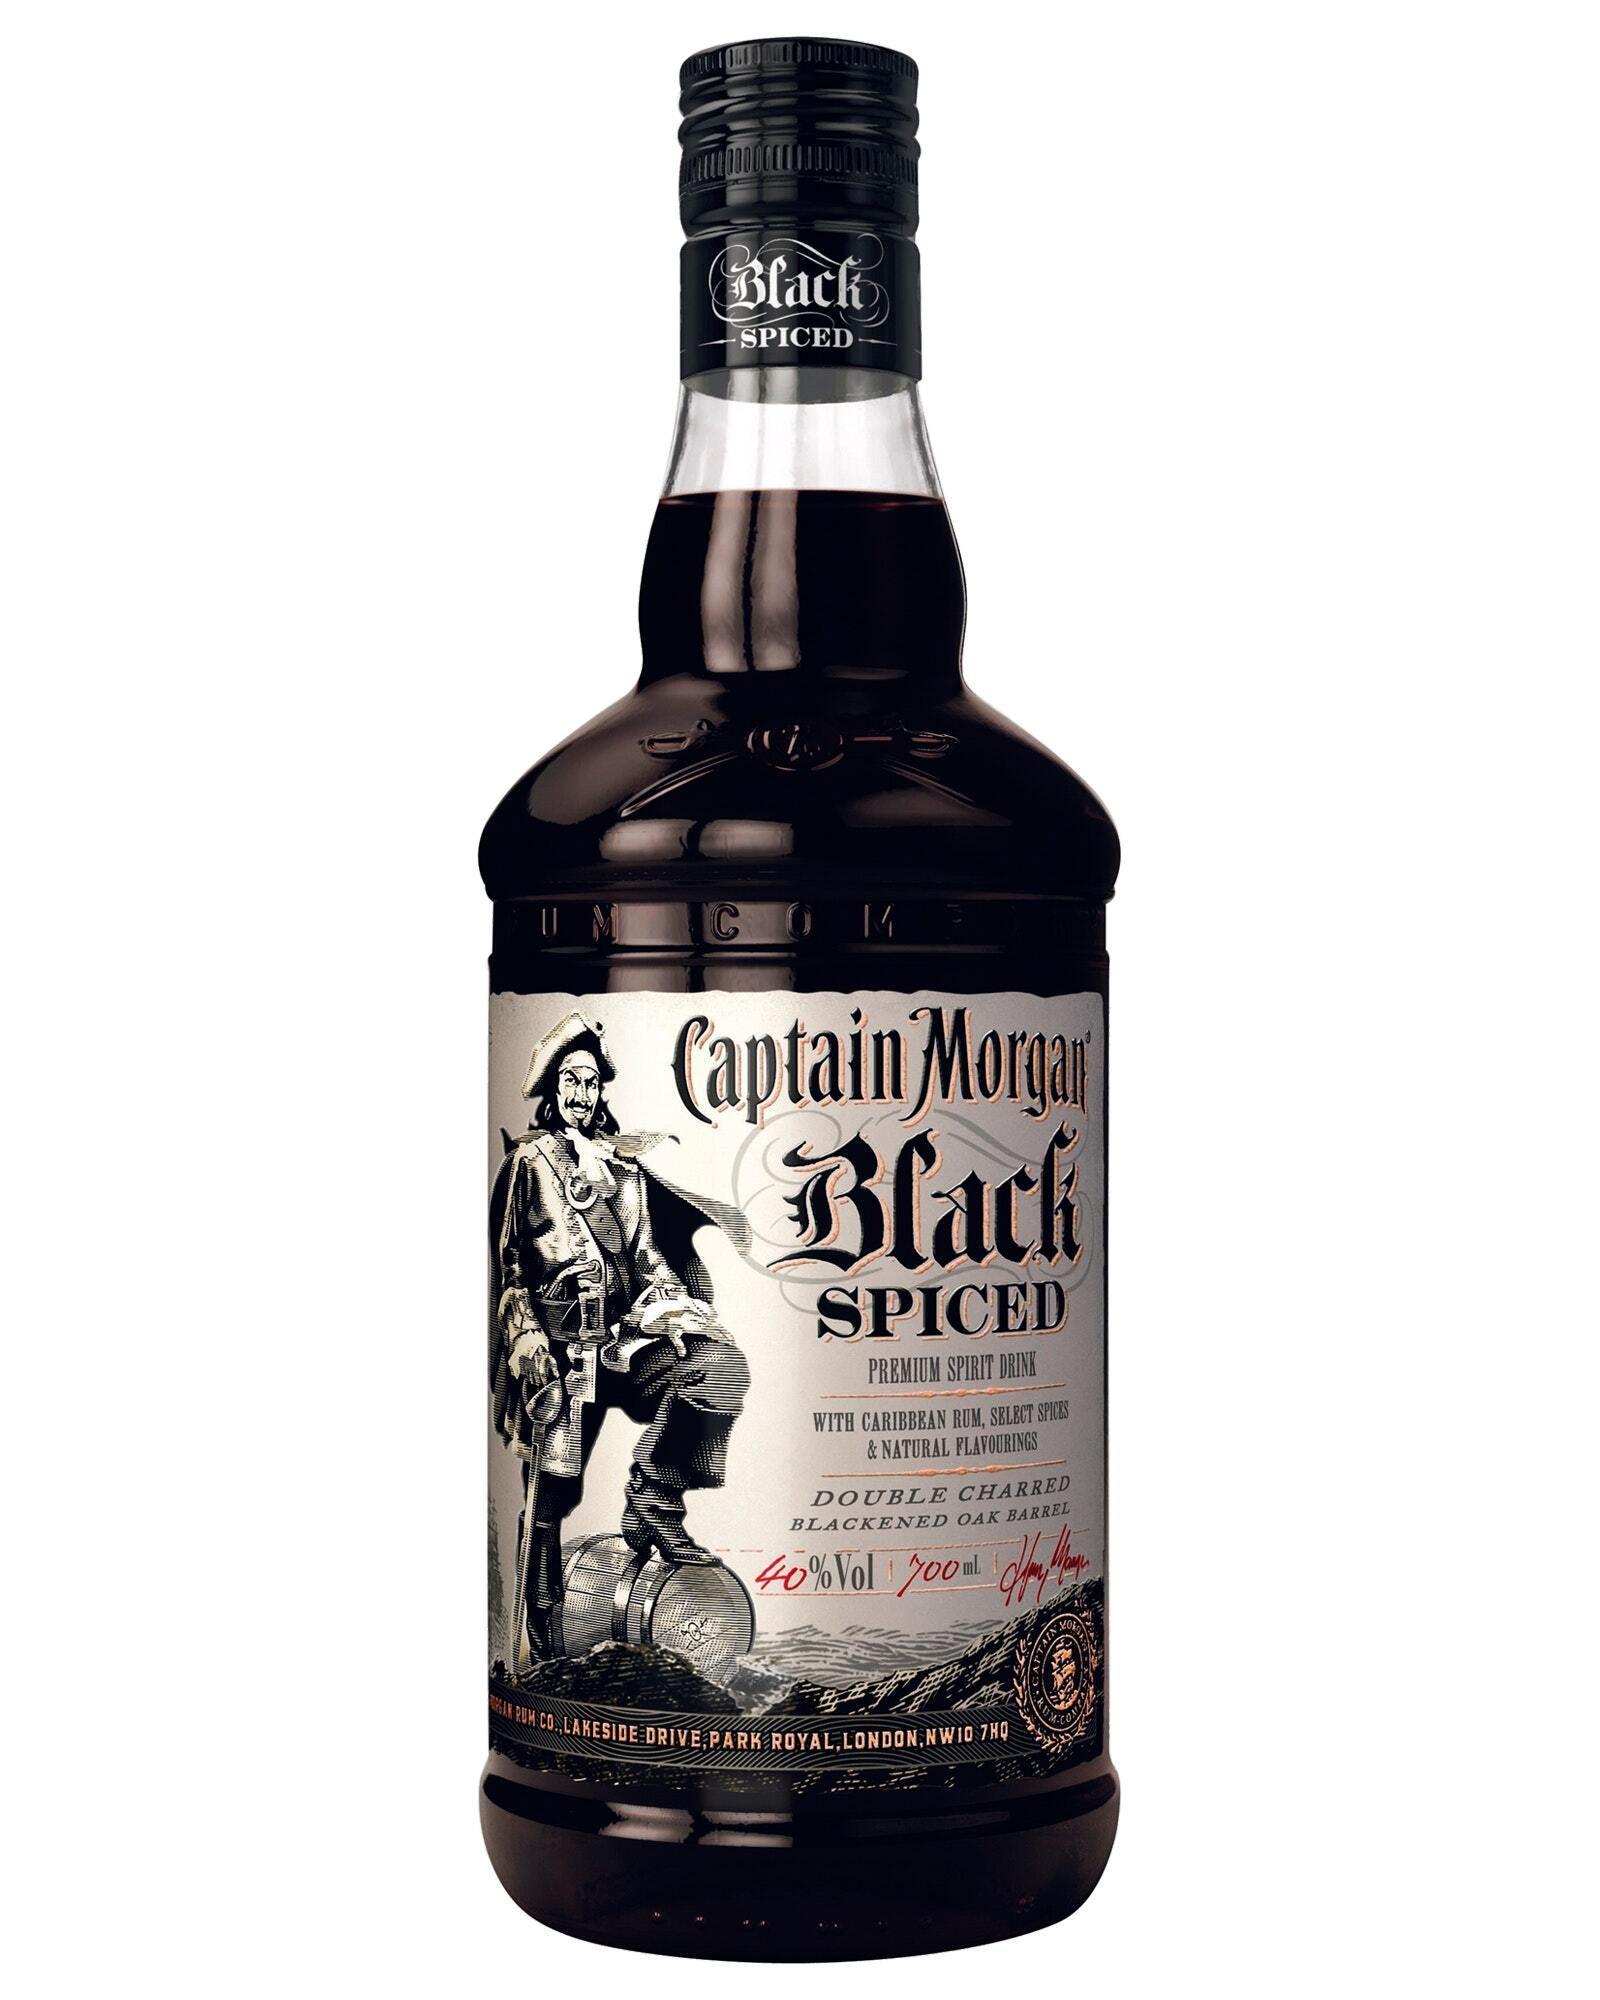 Captain Morgan Black Spiced Rum 700mL Bottle